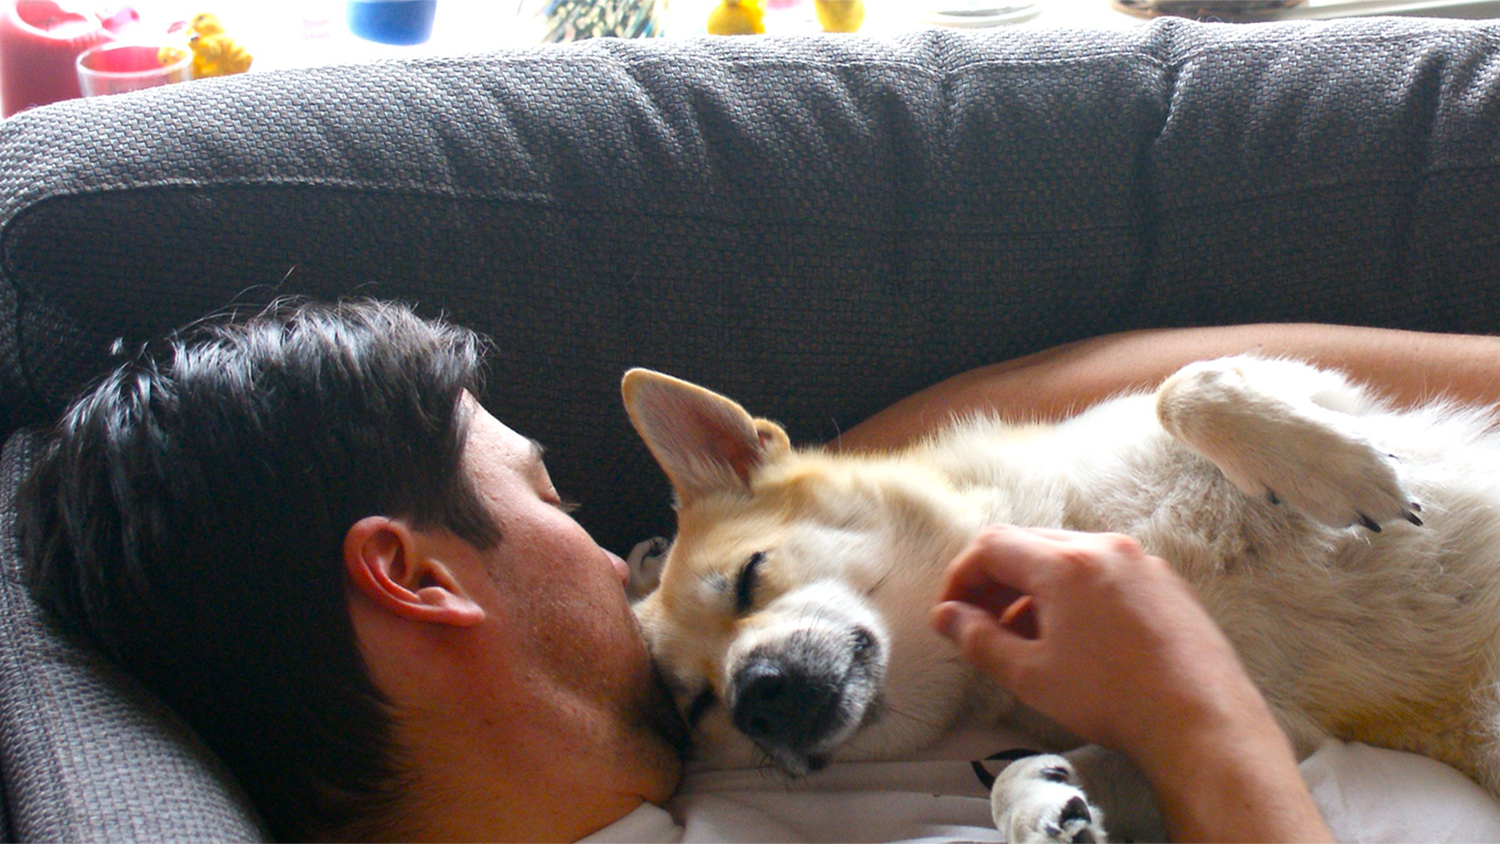 Dog cuddling with man.